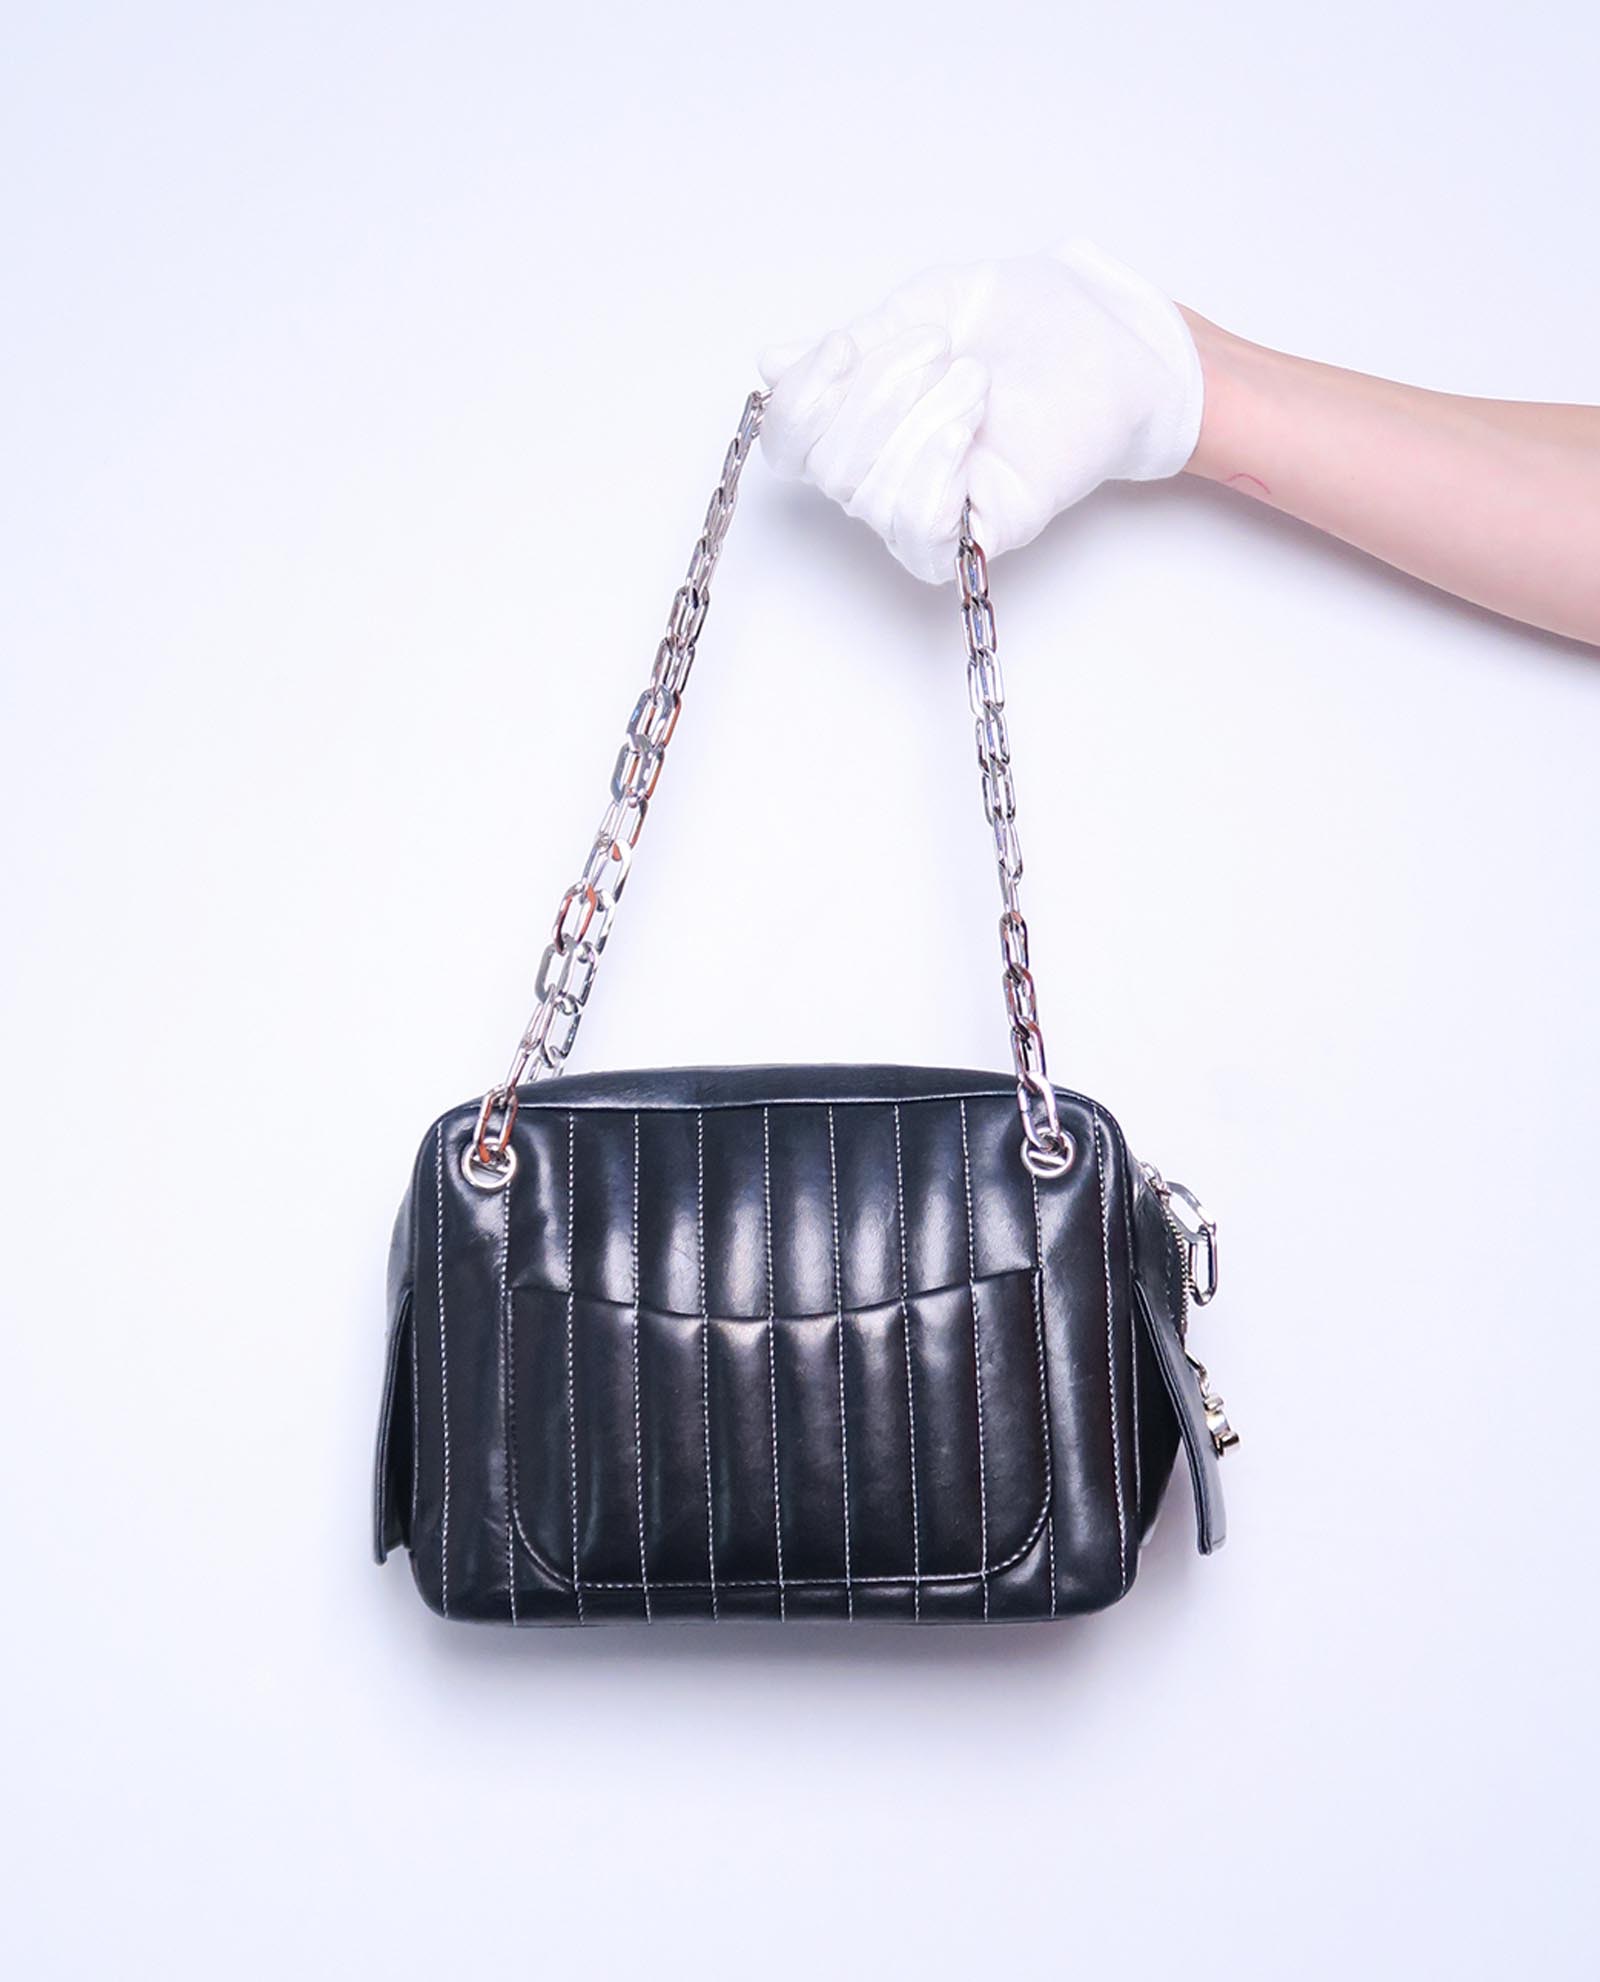 Chanel Mademoiselle Bag, Bragmybag